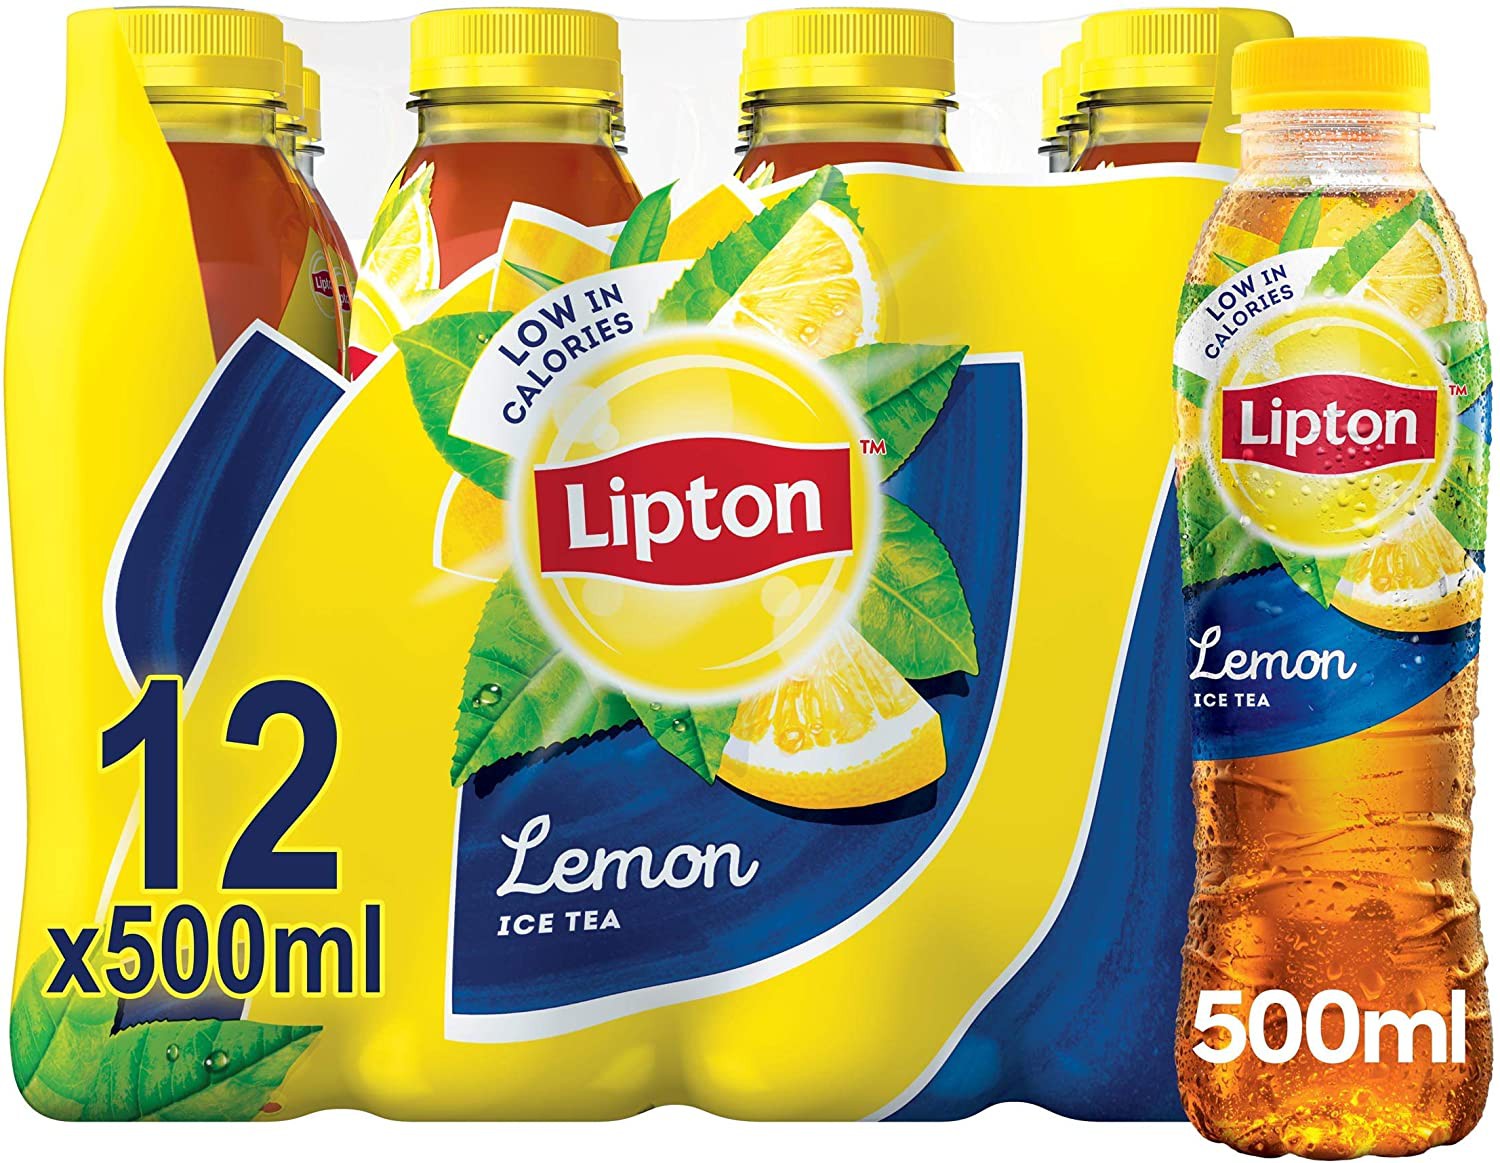 Lipton+Ice+Tea+Lemon+case+of+12